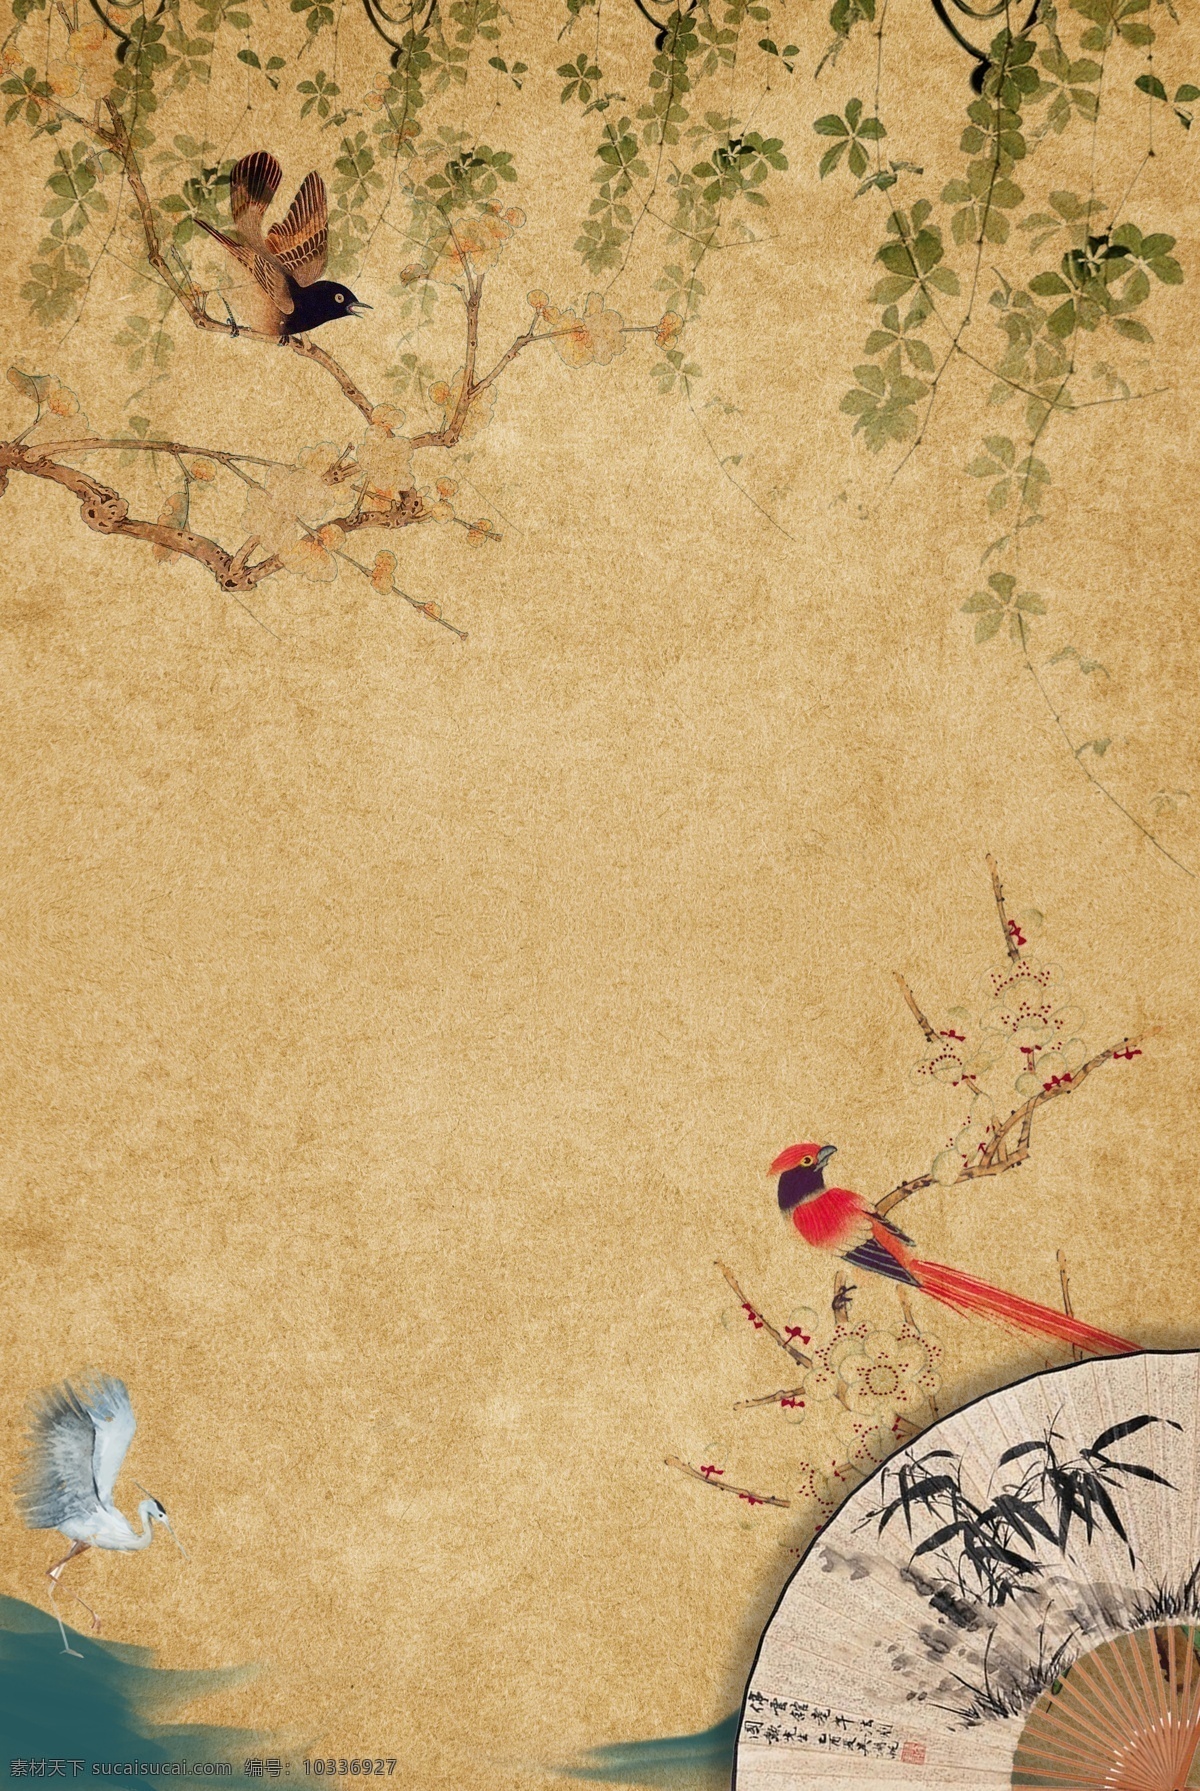 工笔画 古典 中国画 中国 风 树藤 扇子 鸟类 江河 中国风 花卉 鸟 山水 水墨 仙鹤 复古 传统